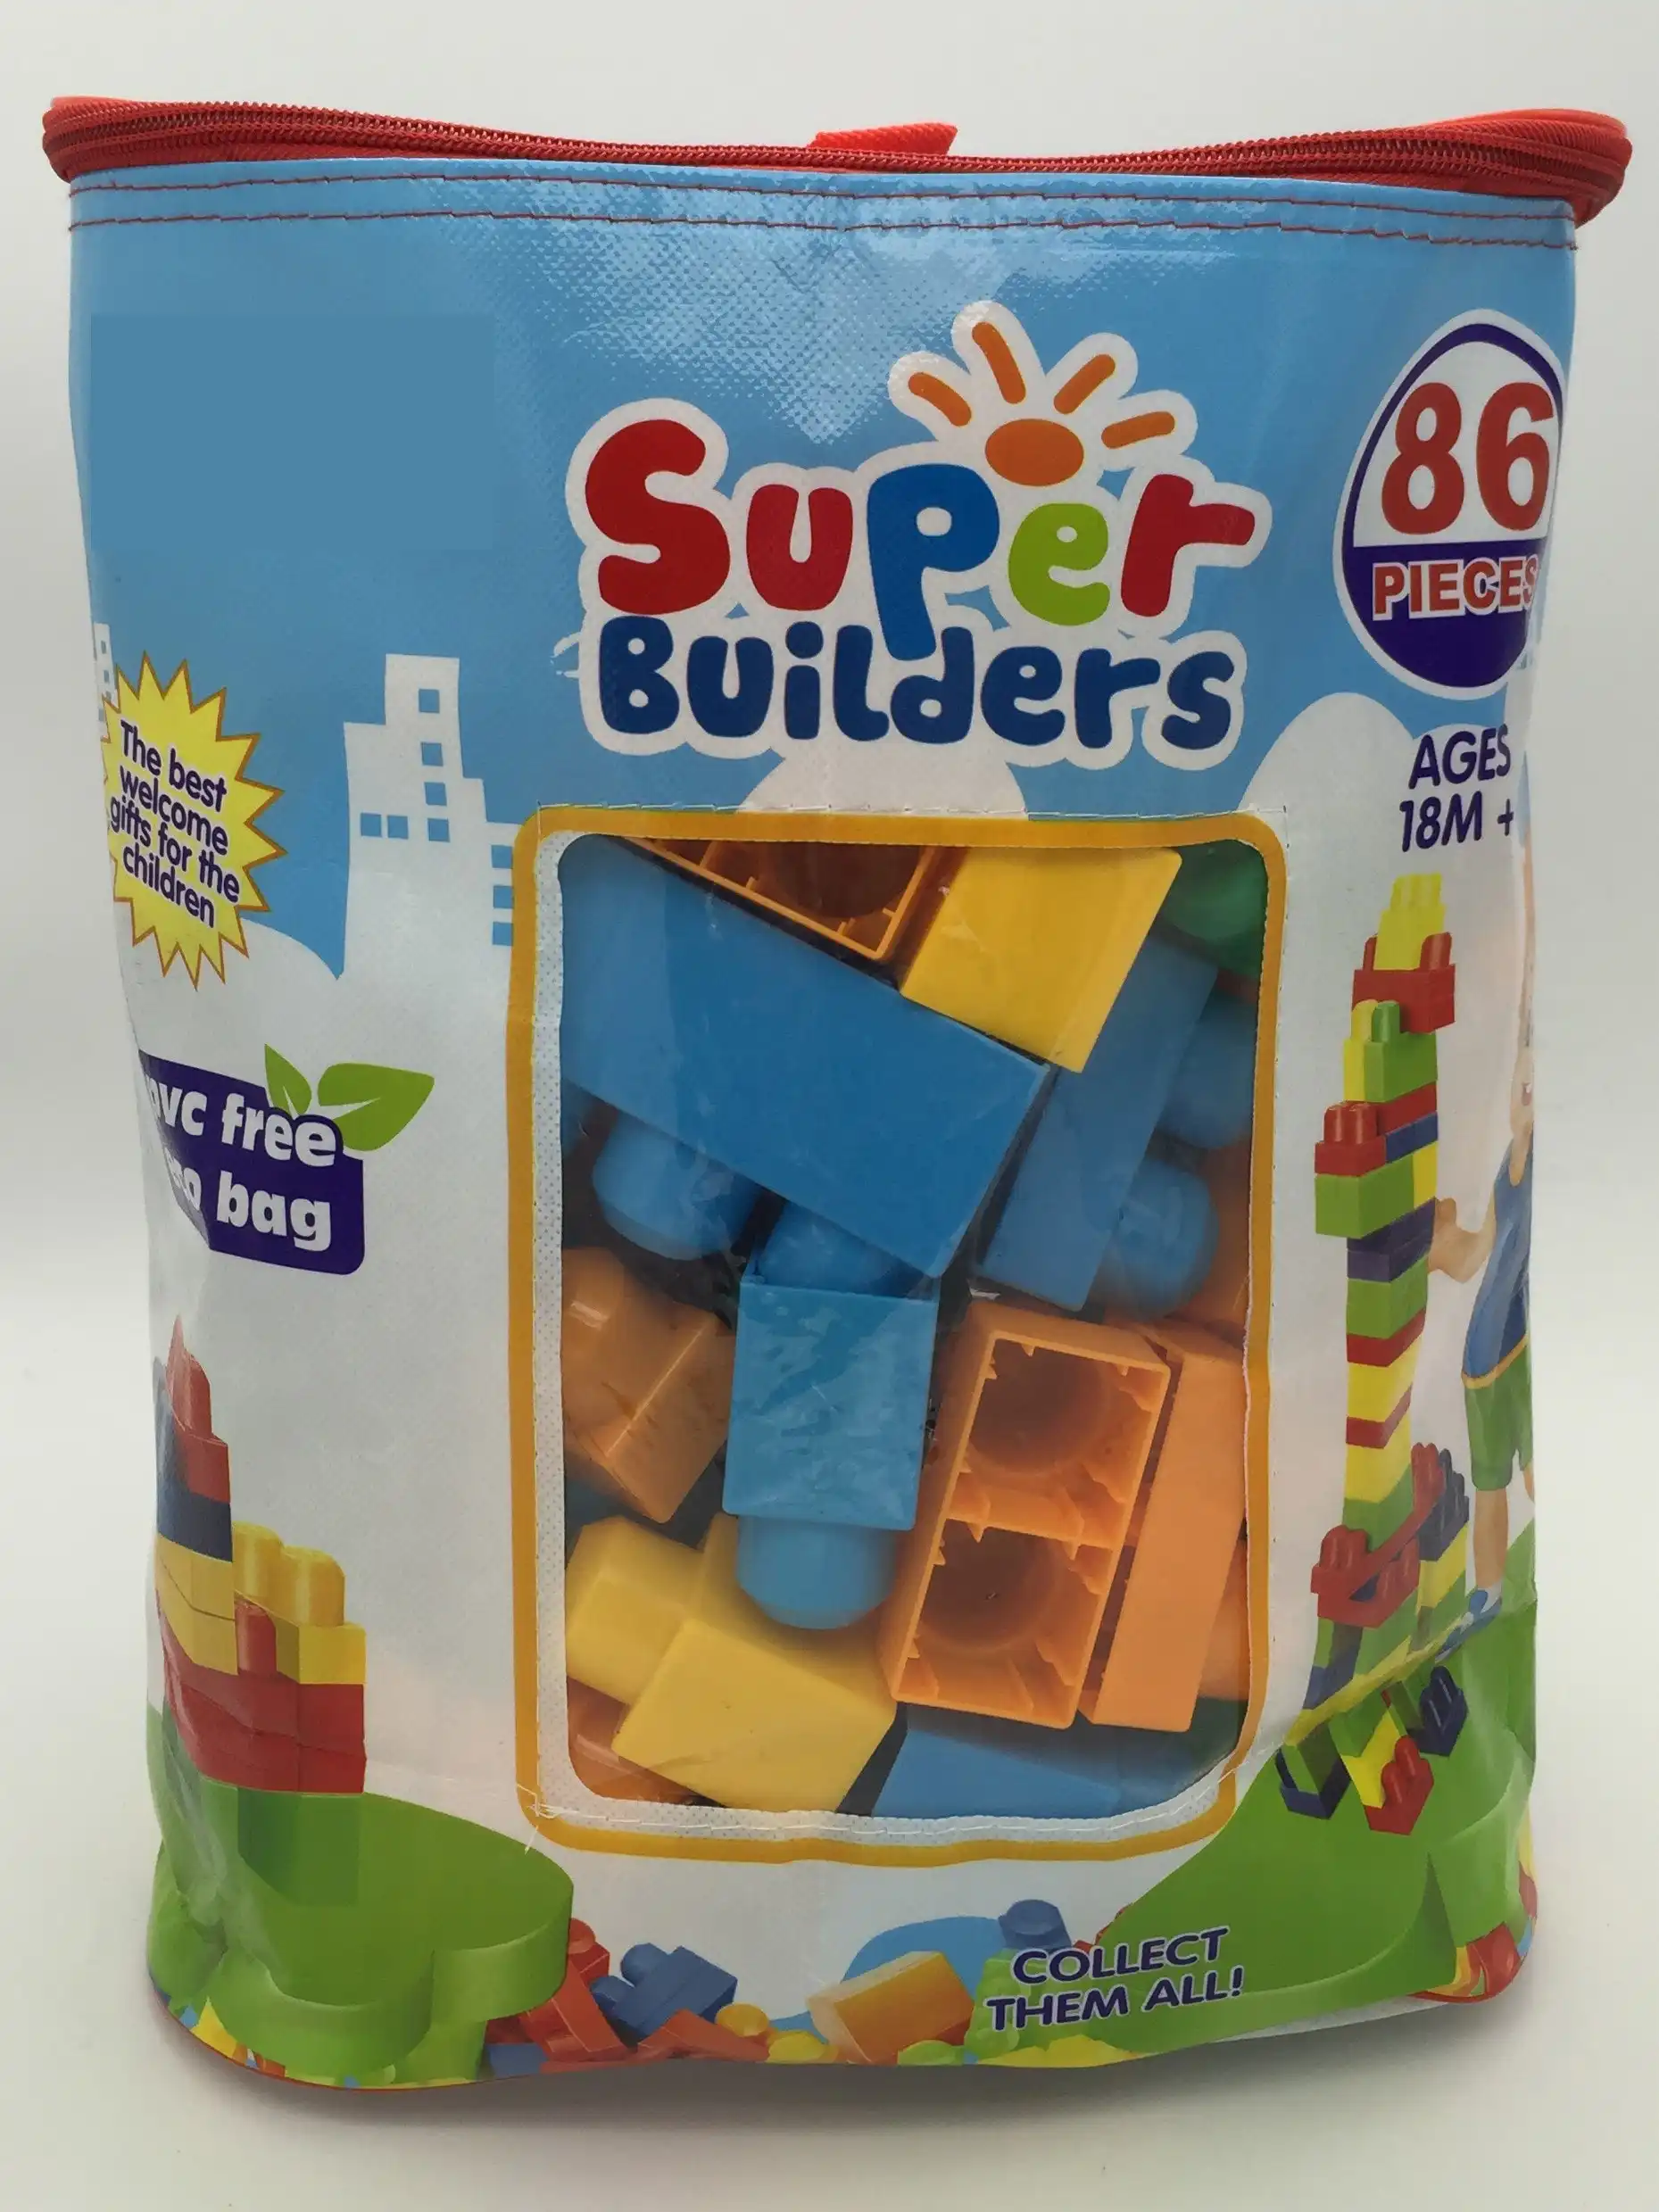 Super Builders 80pcs